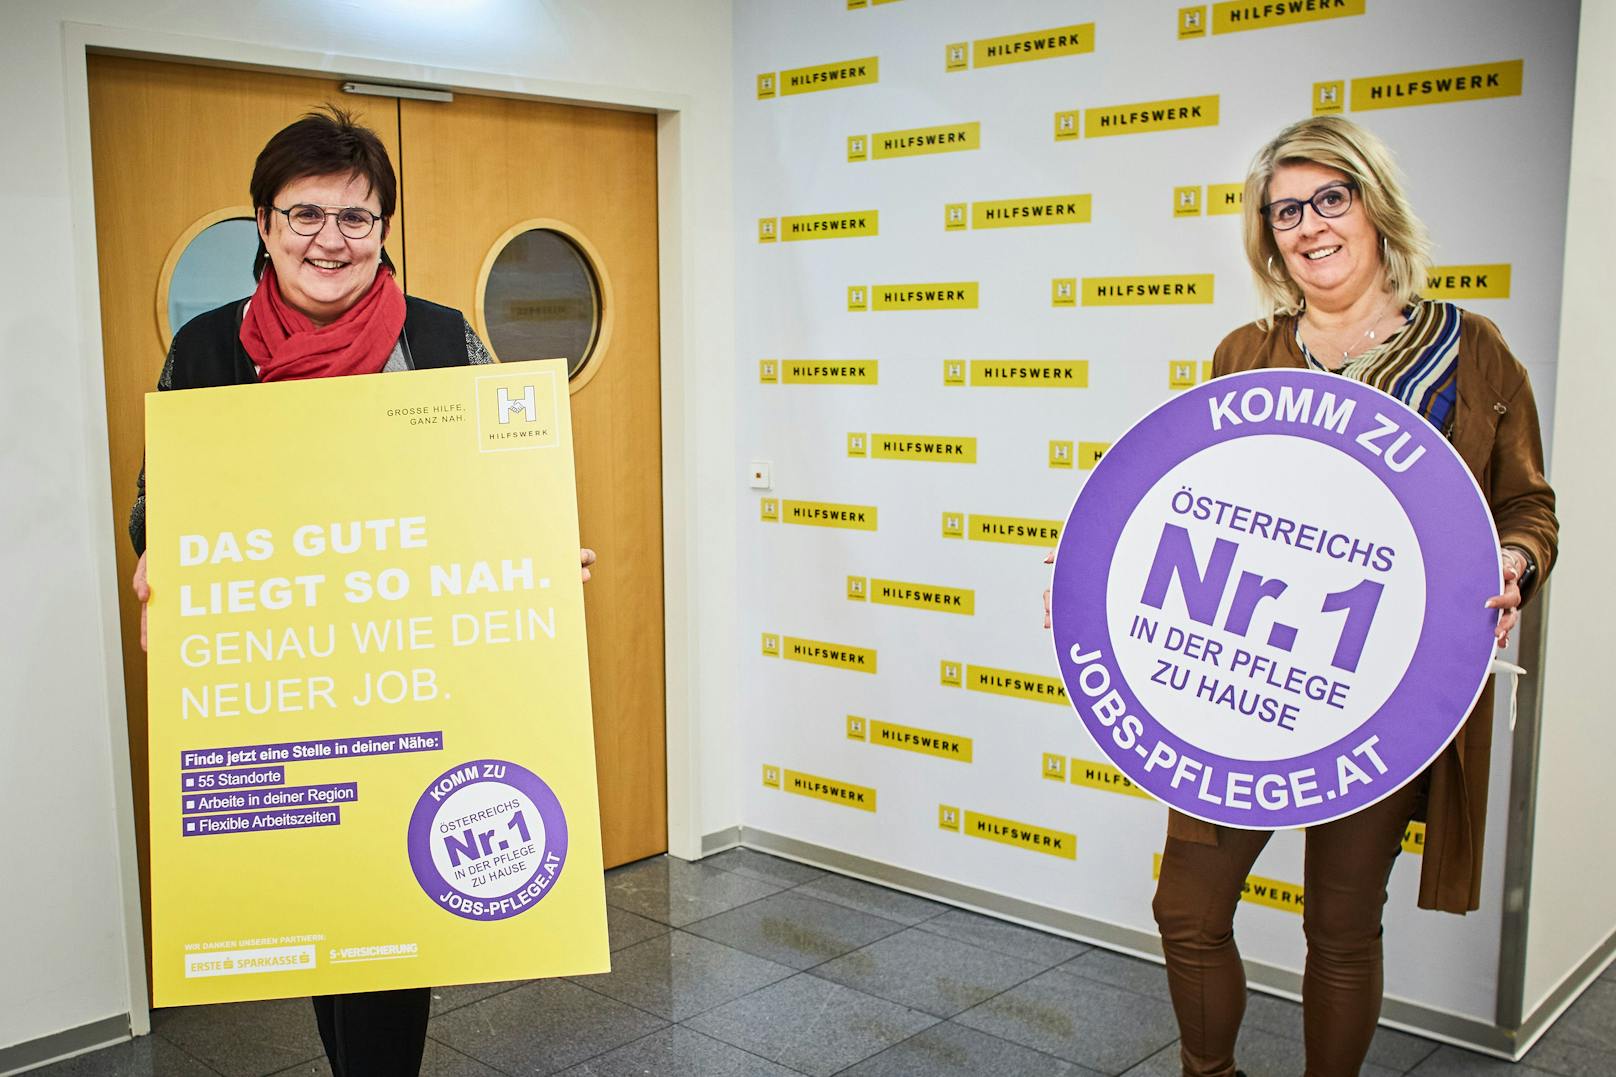 Hilfswerk NÖ-Präsidentin LAbg. Bgm. Michaela Hinterholzer und Pflegedirektorin Gabriela Goll präsentieren die Kampagne.